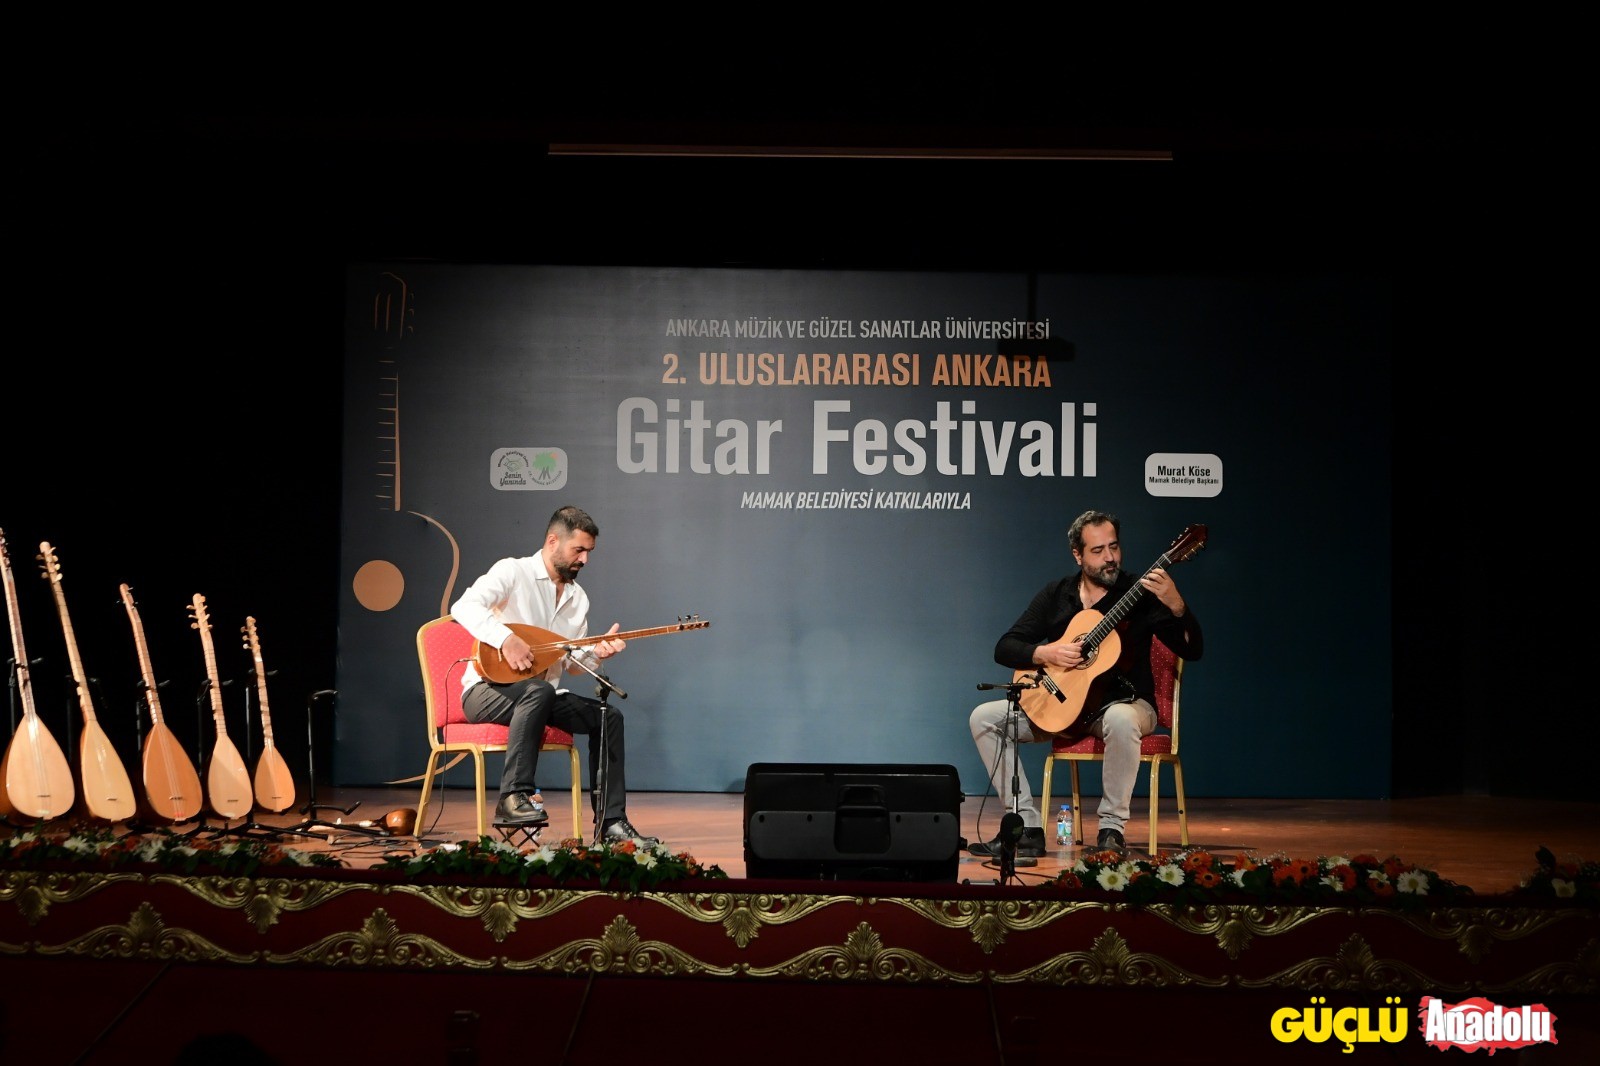 Mamak'da 2. Uluslararası Gitar Festivali (1)